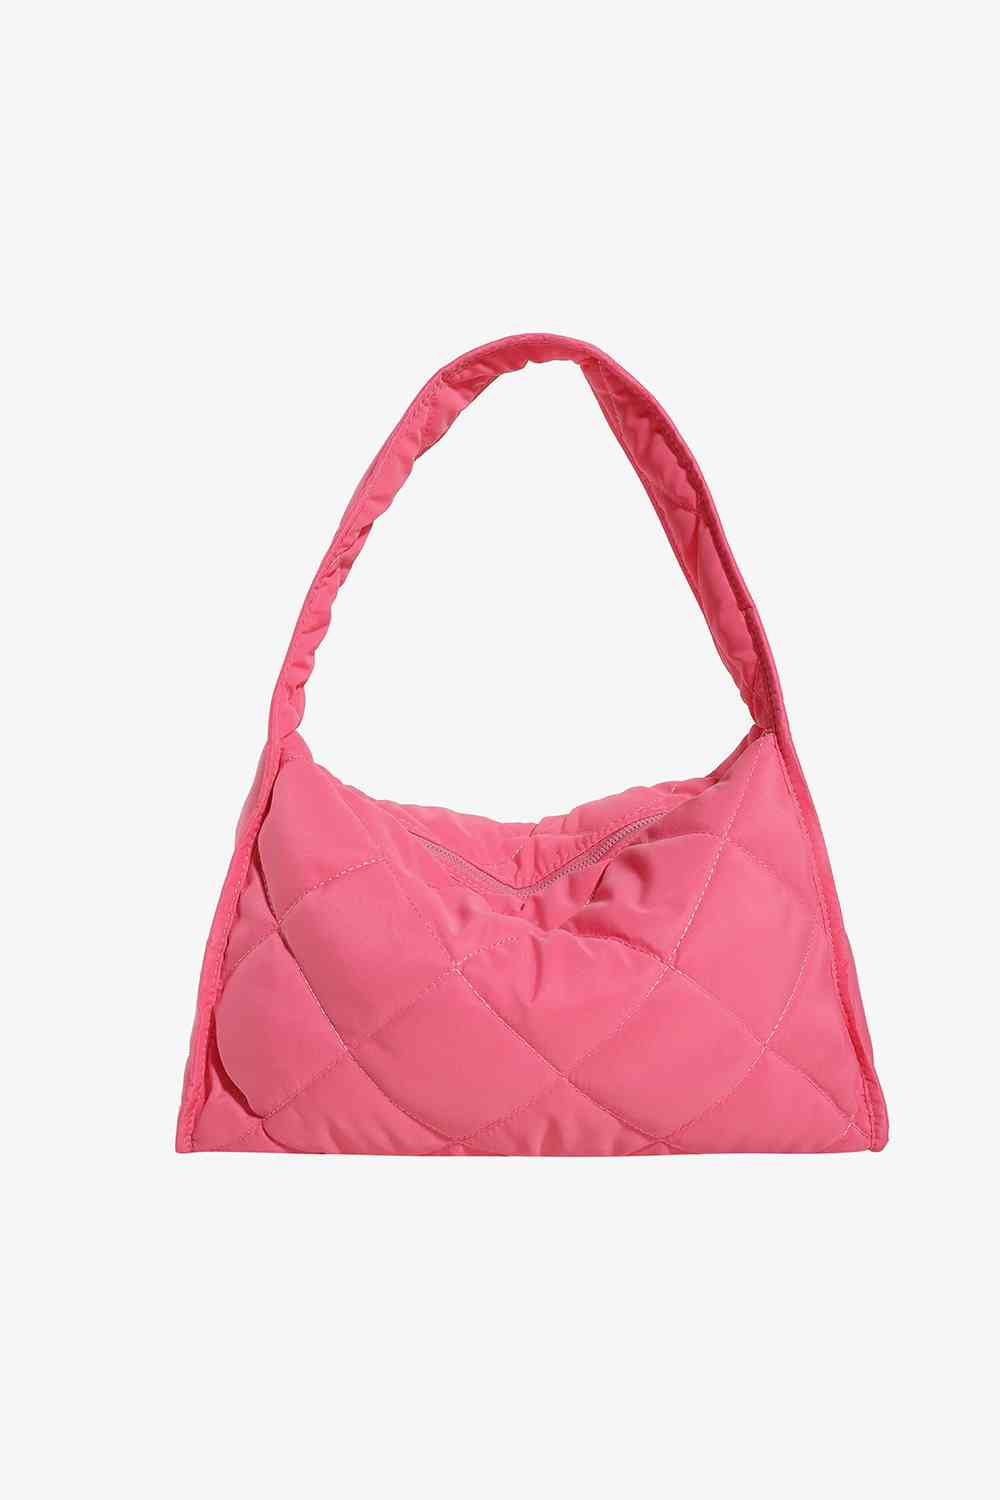 Nylon Shoulder Bag Hot Pink One Size